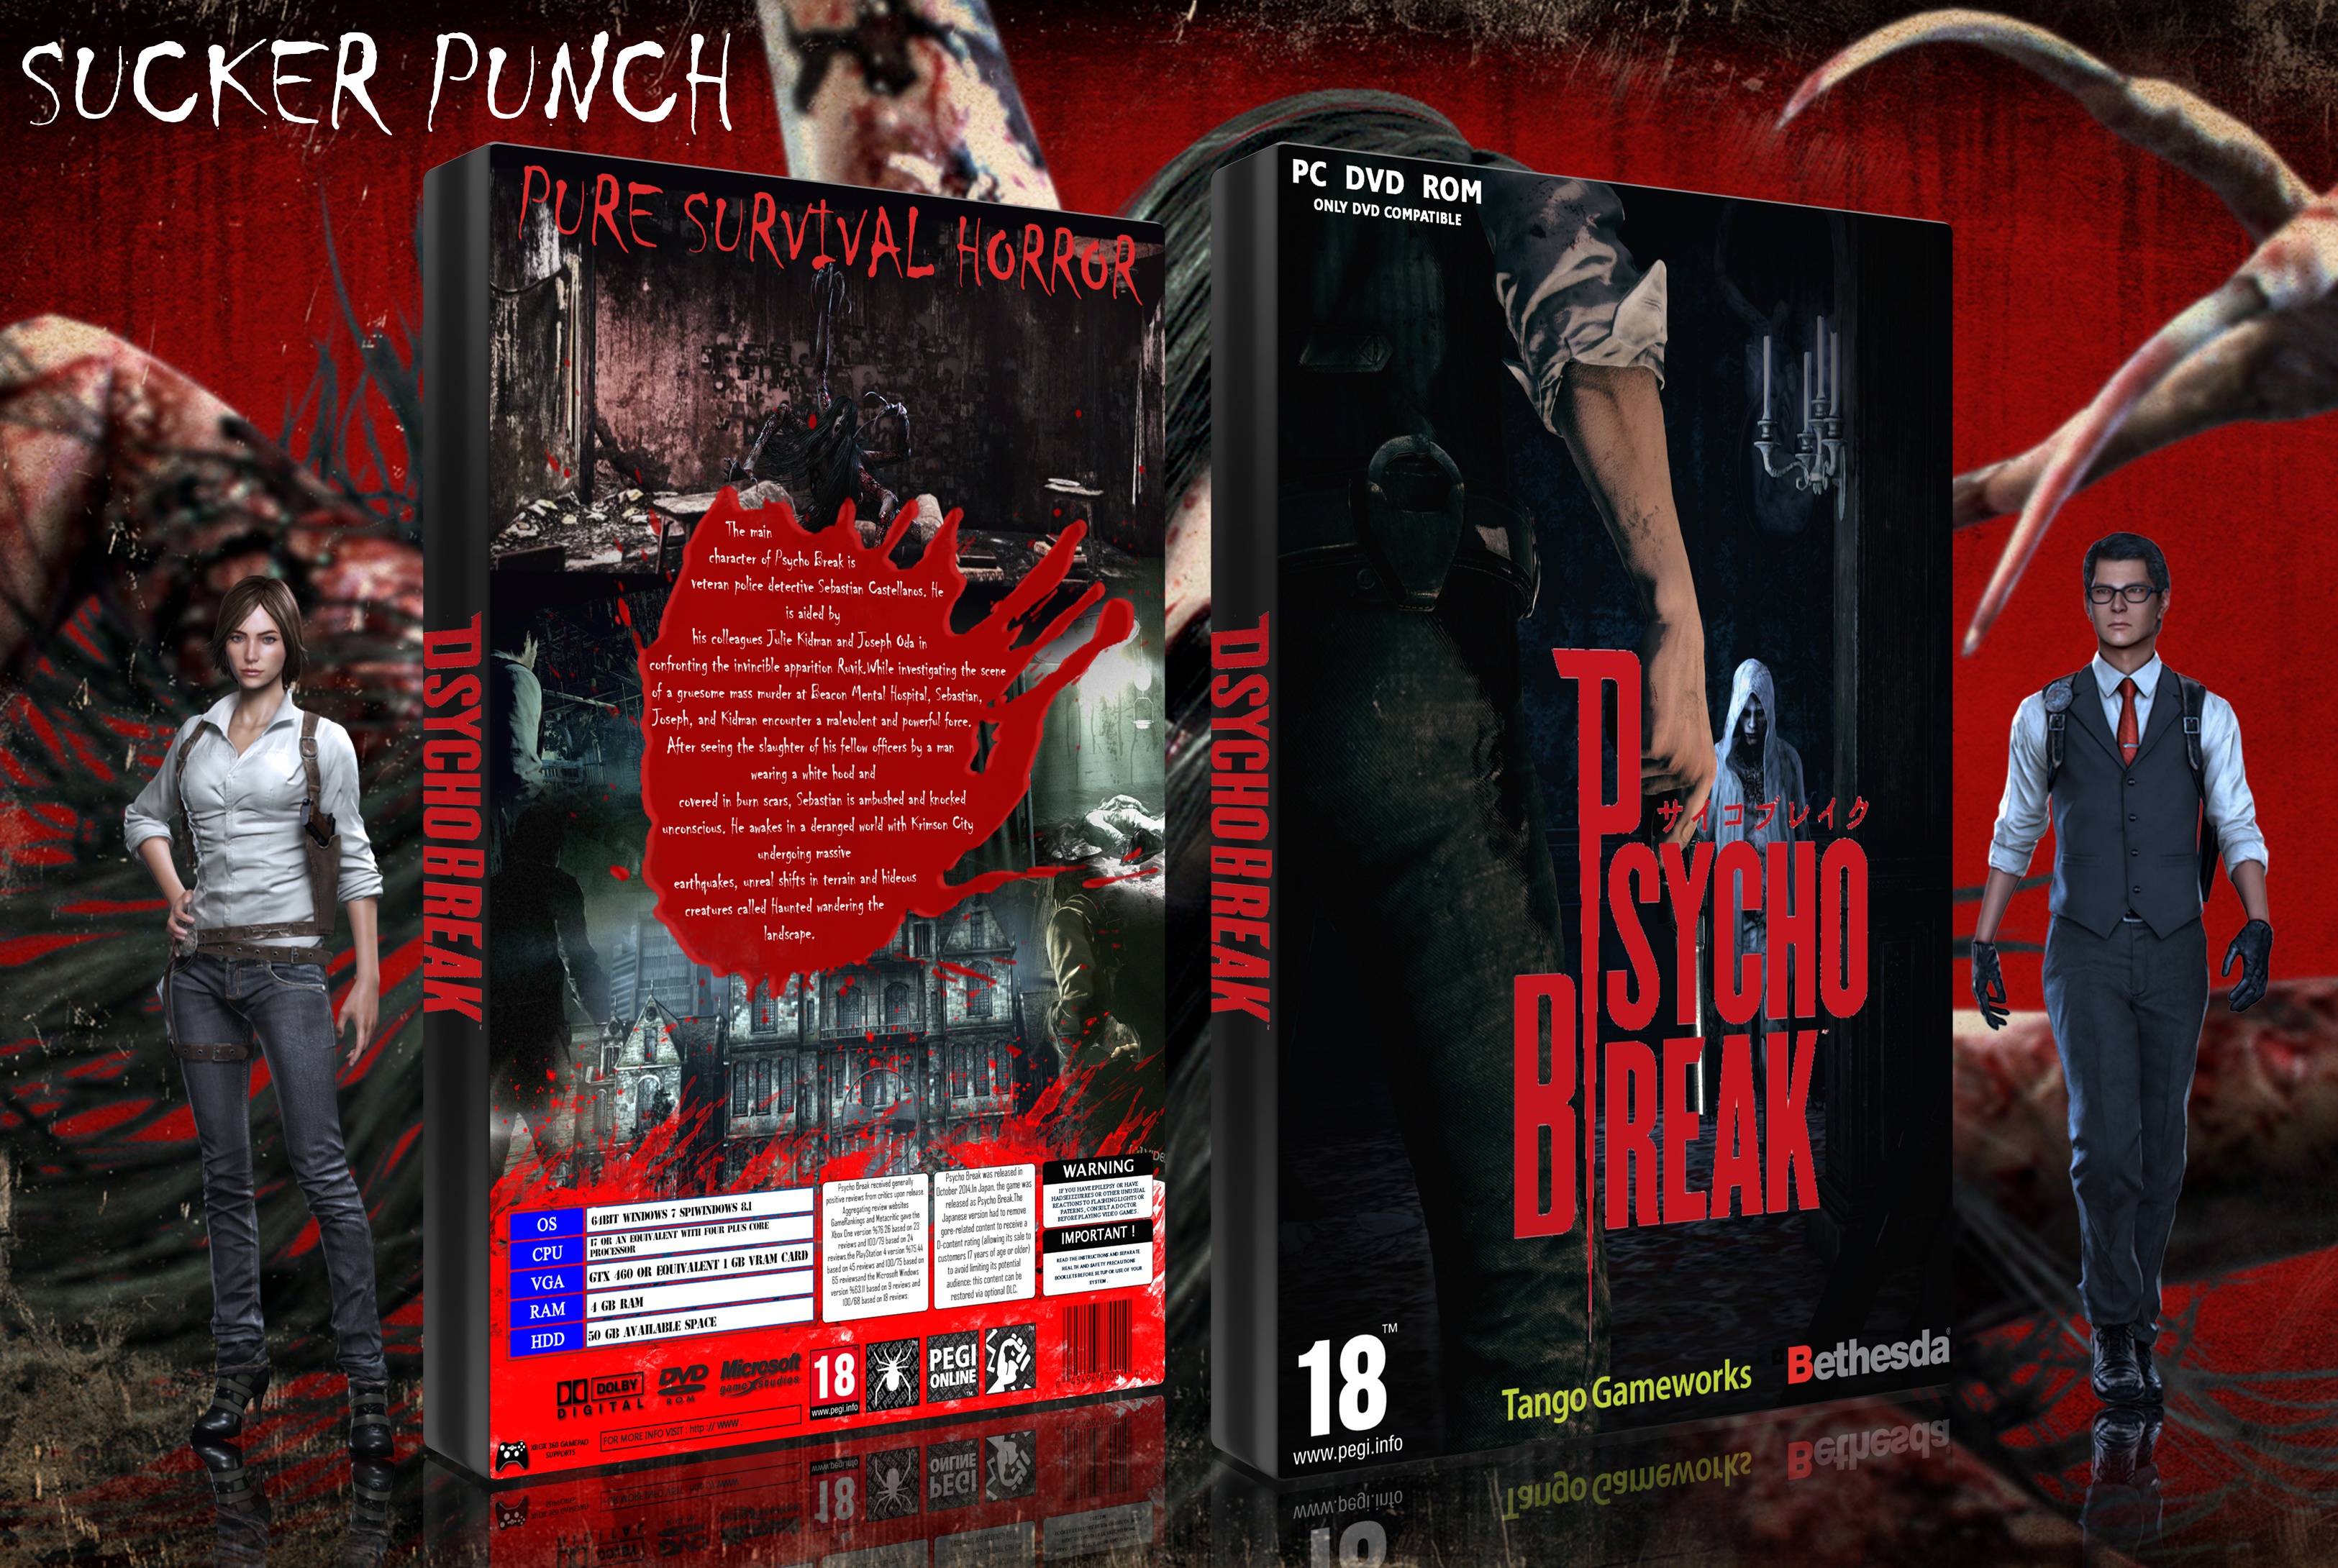 Psycho Break box cover